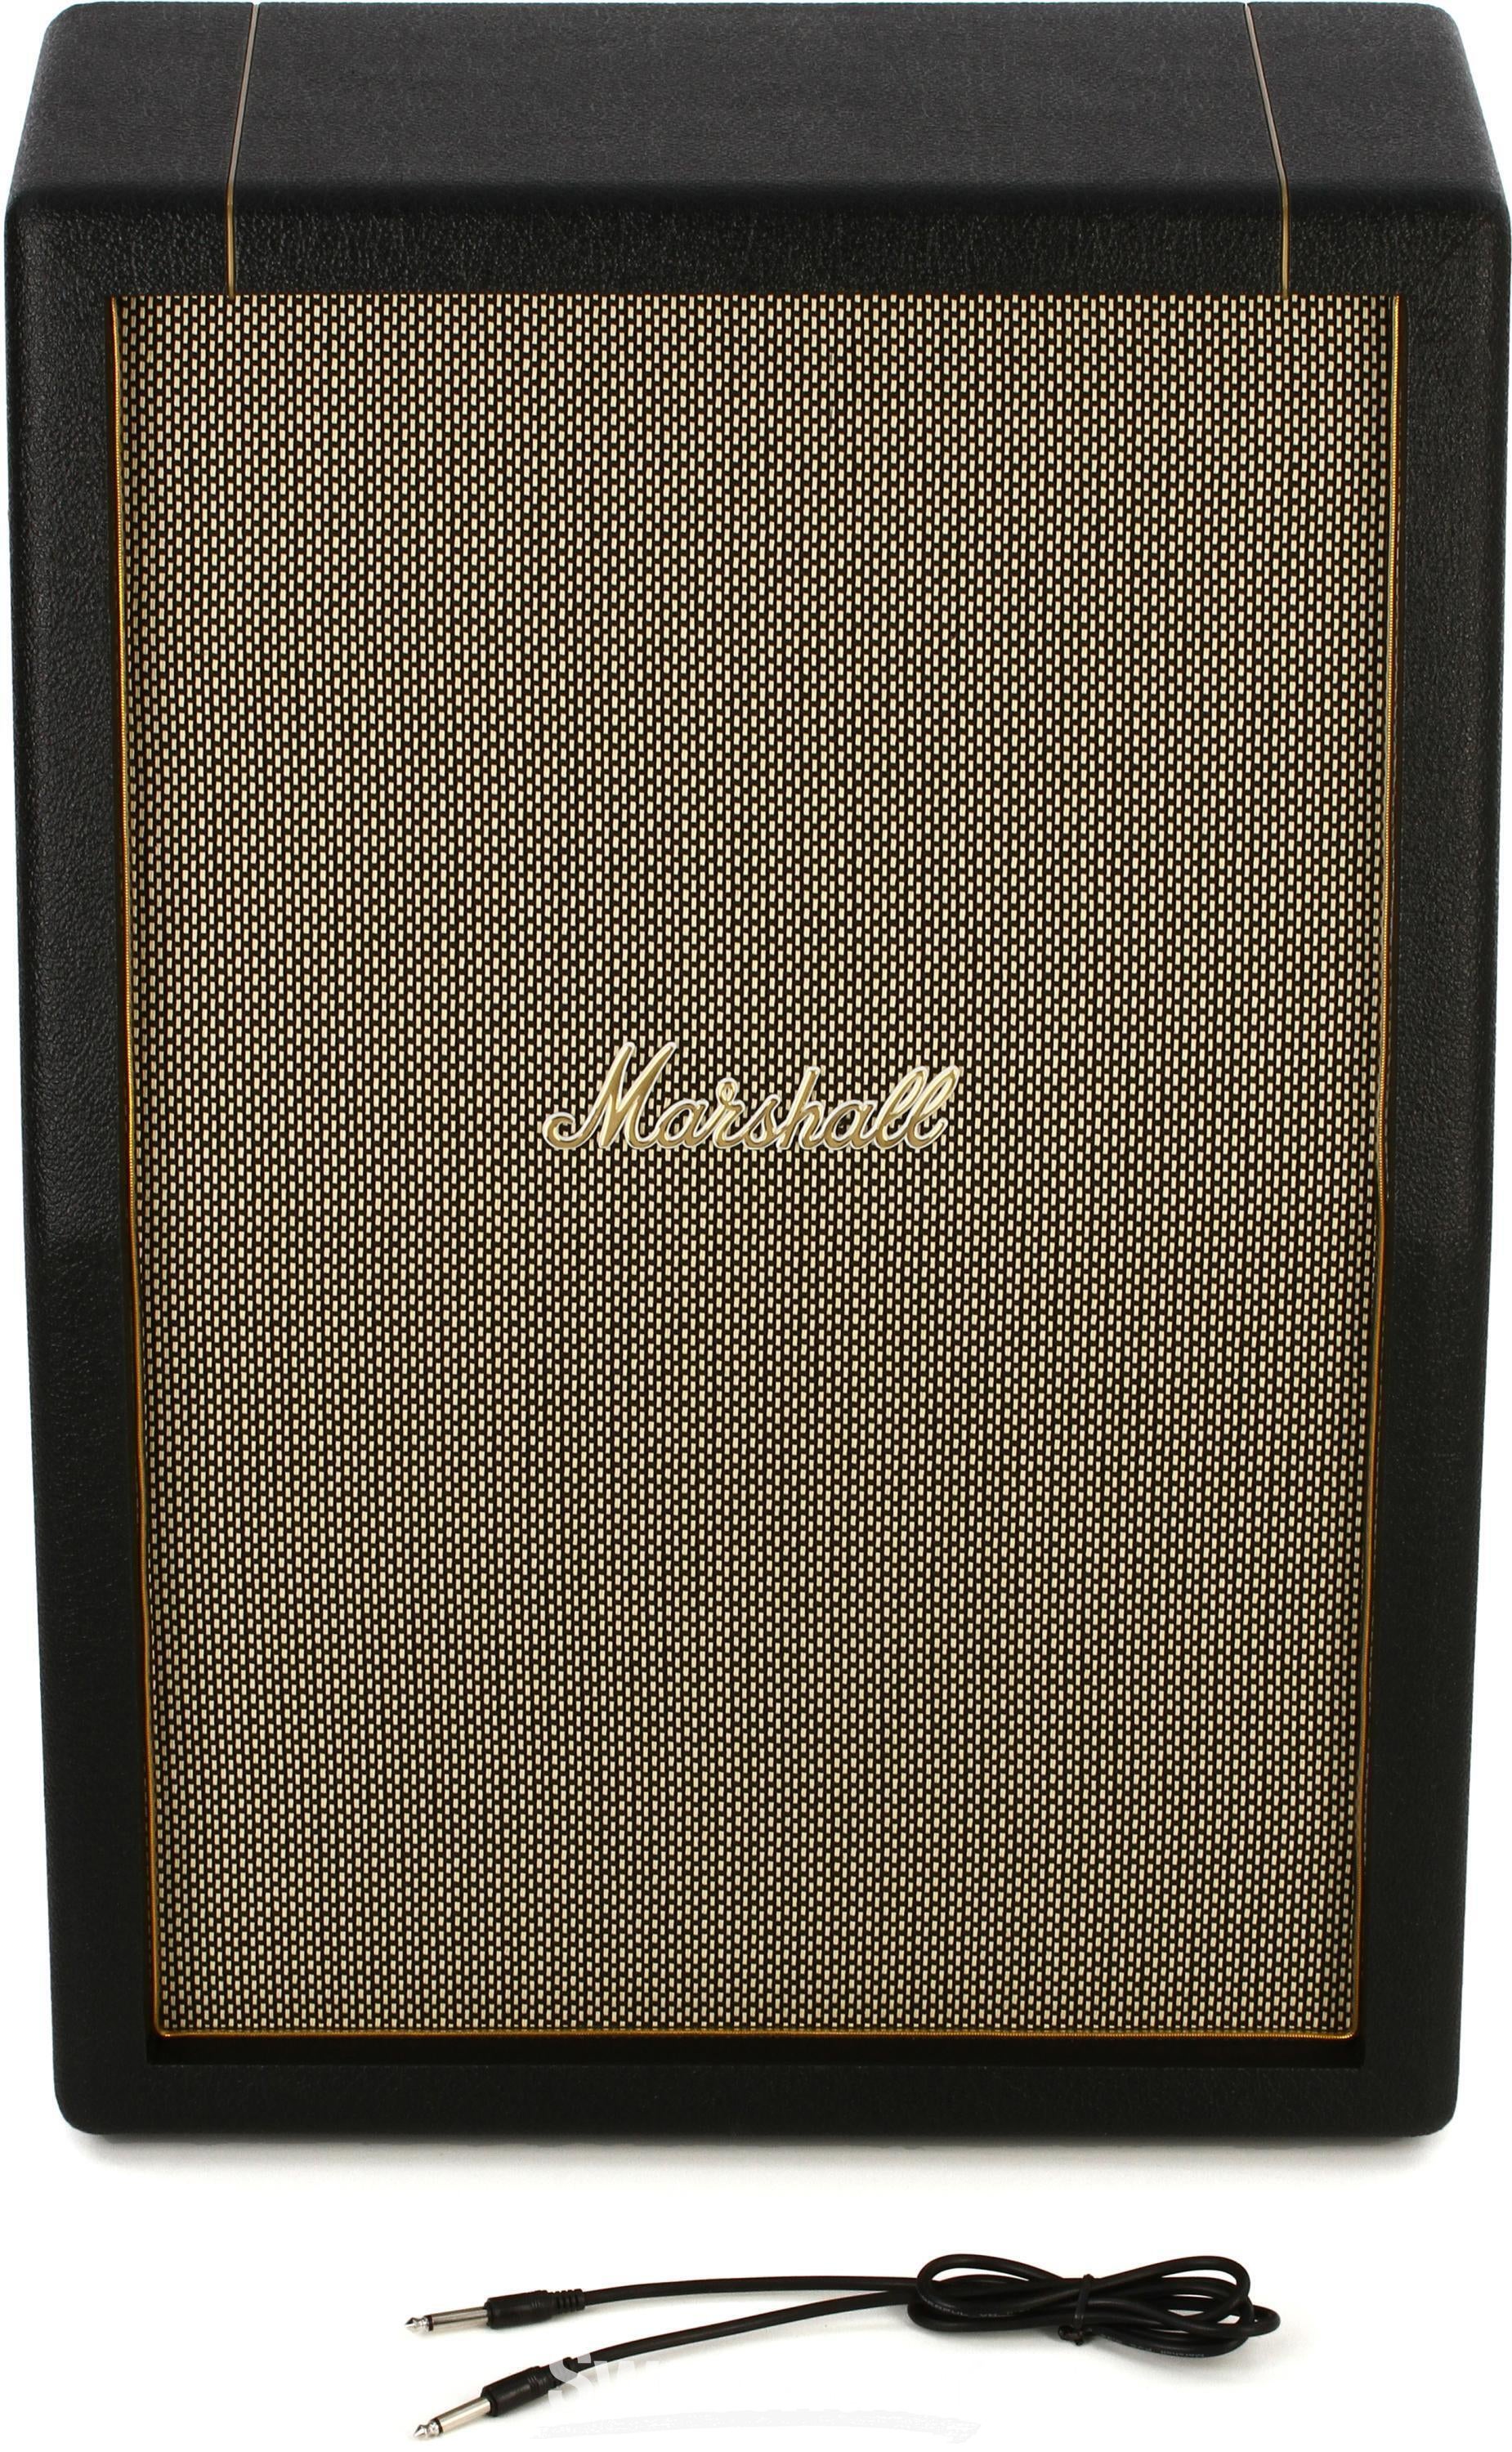 Marshall SV212 Studio Vintage 140-watt 2x12